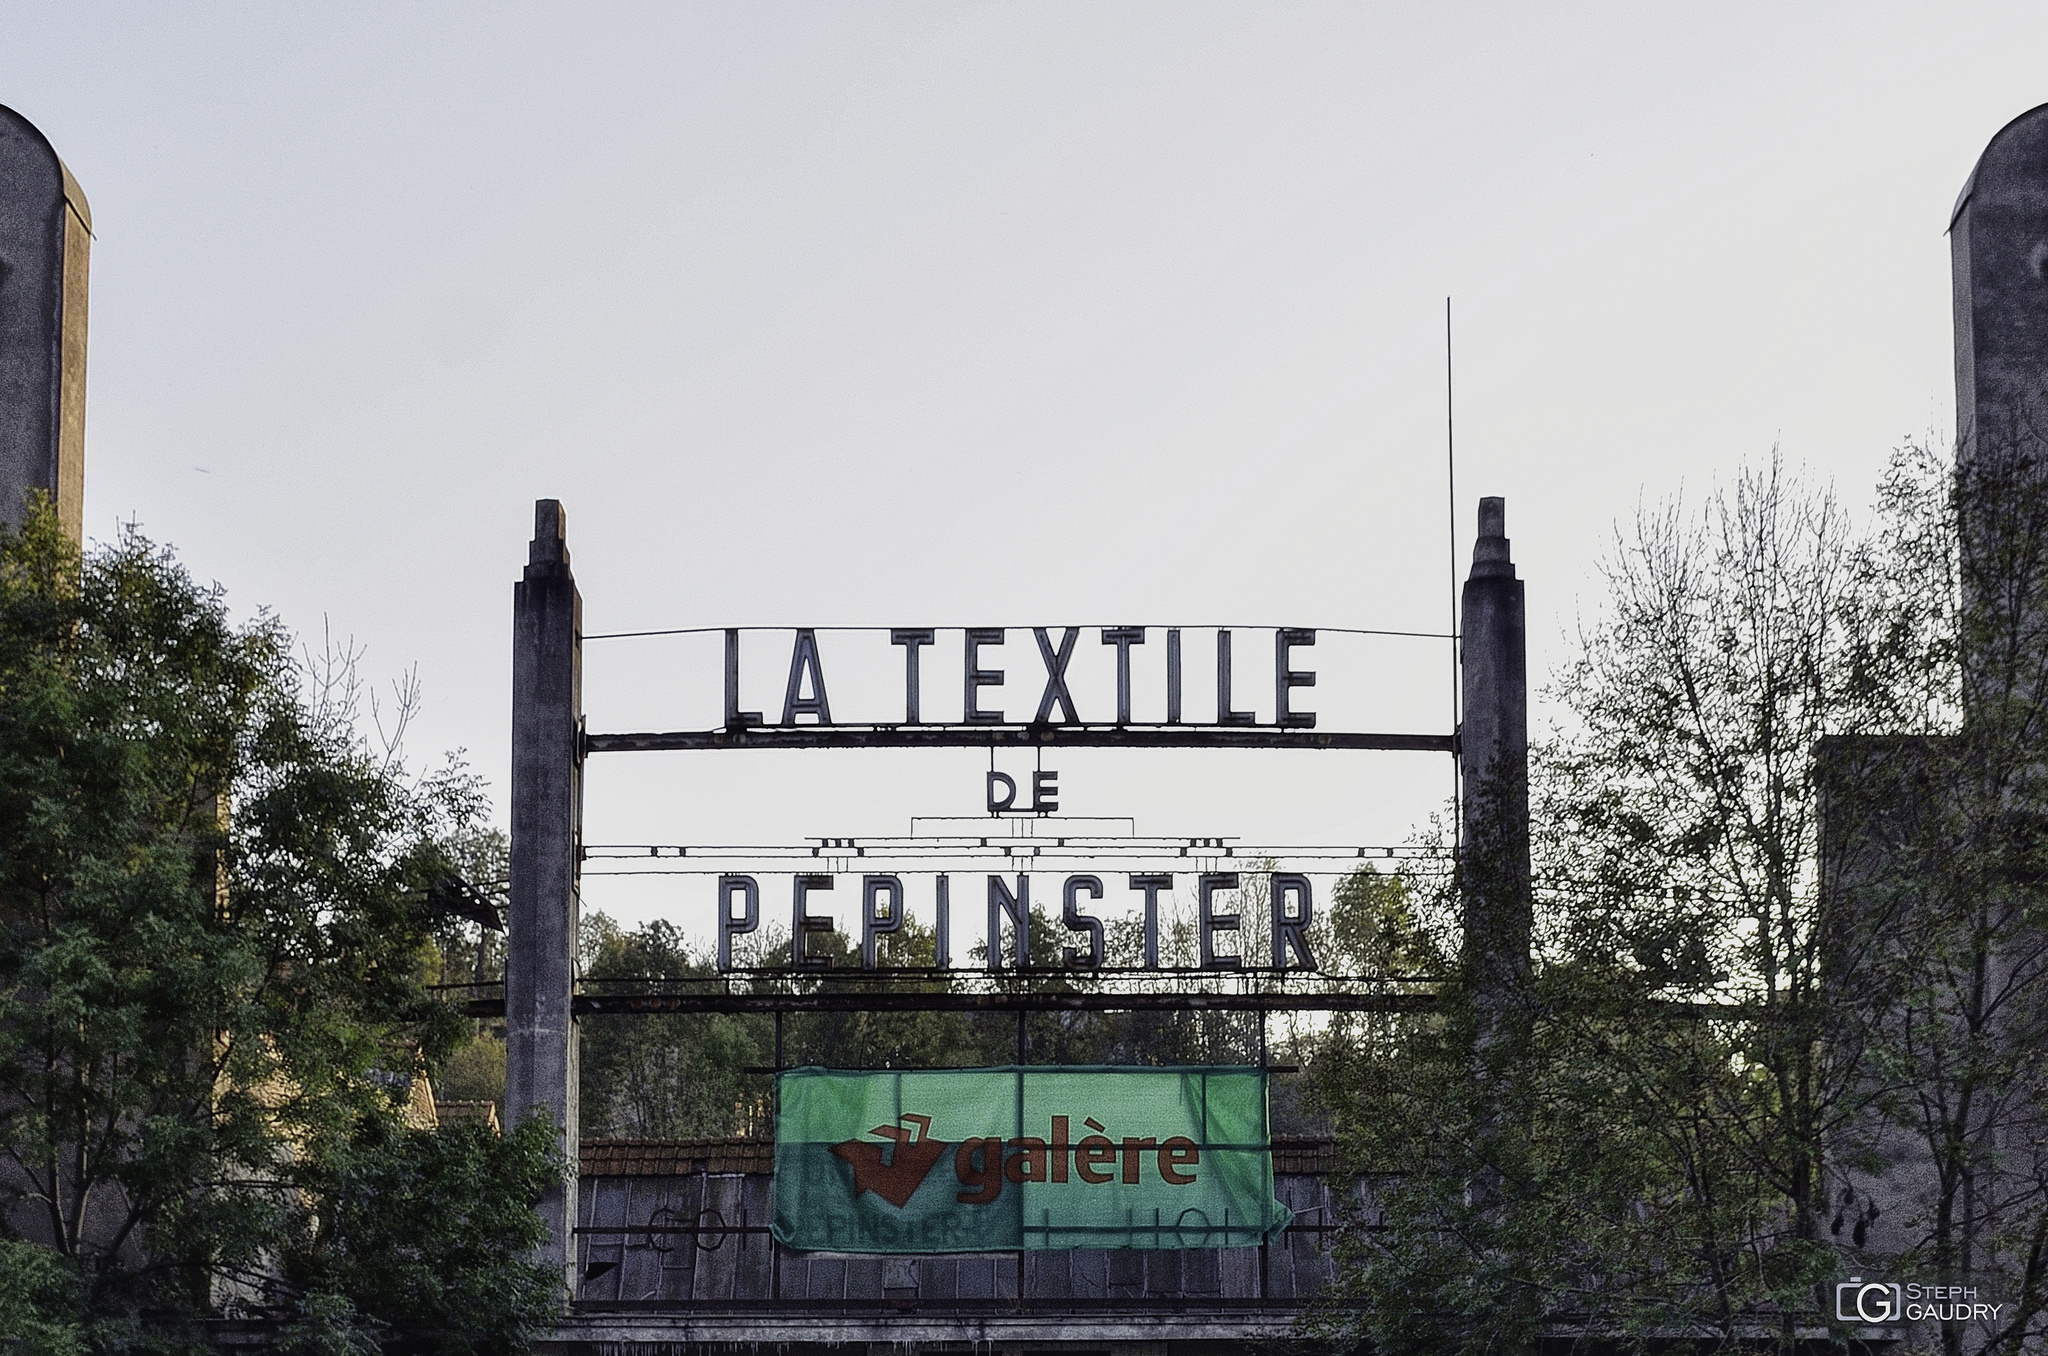 La textile de Pepinster [Klik om de diavoorstelling te starten]